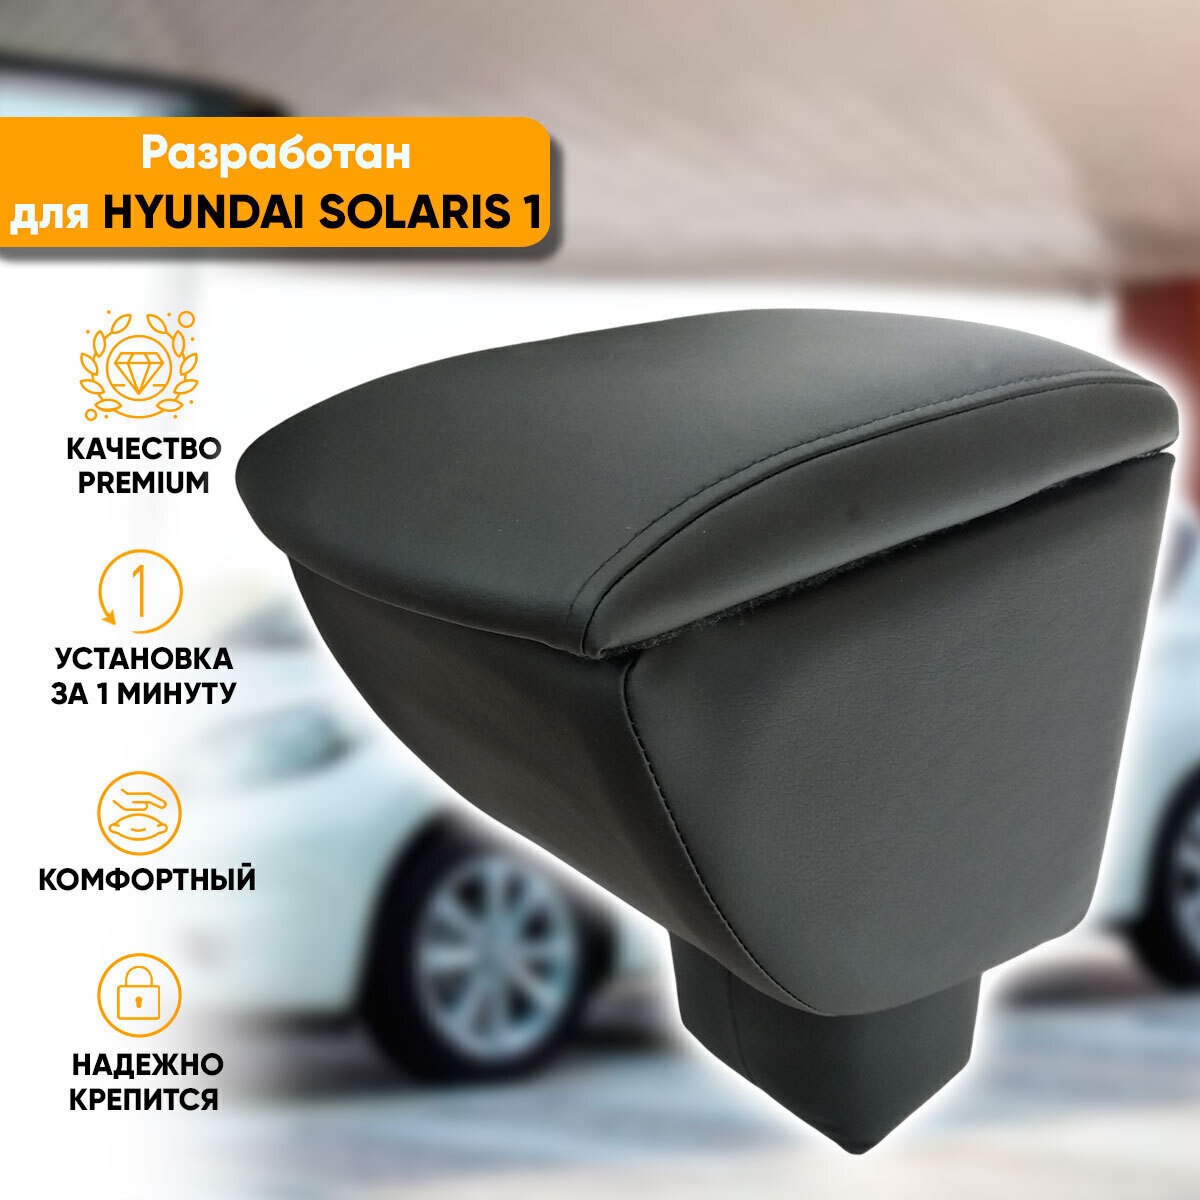 Тюнинг Hyundai Solaris | Аксессуары для тюнинга Хендай Солярис